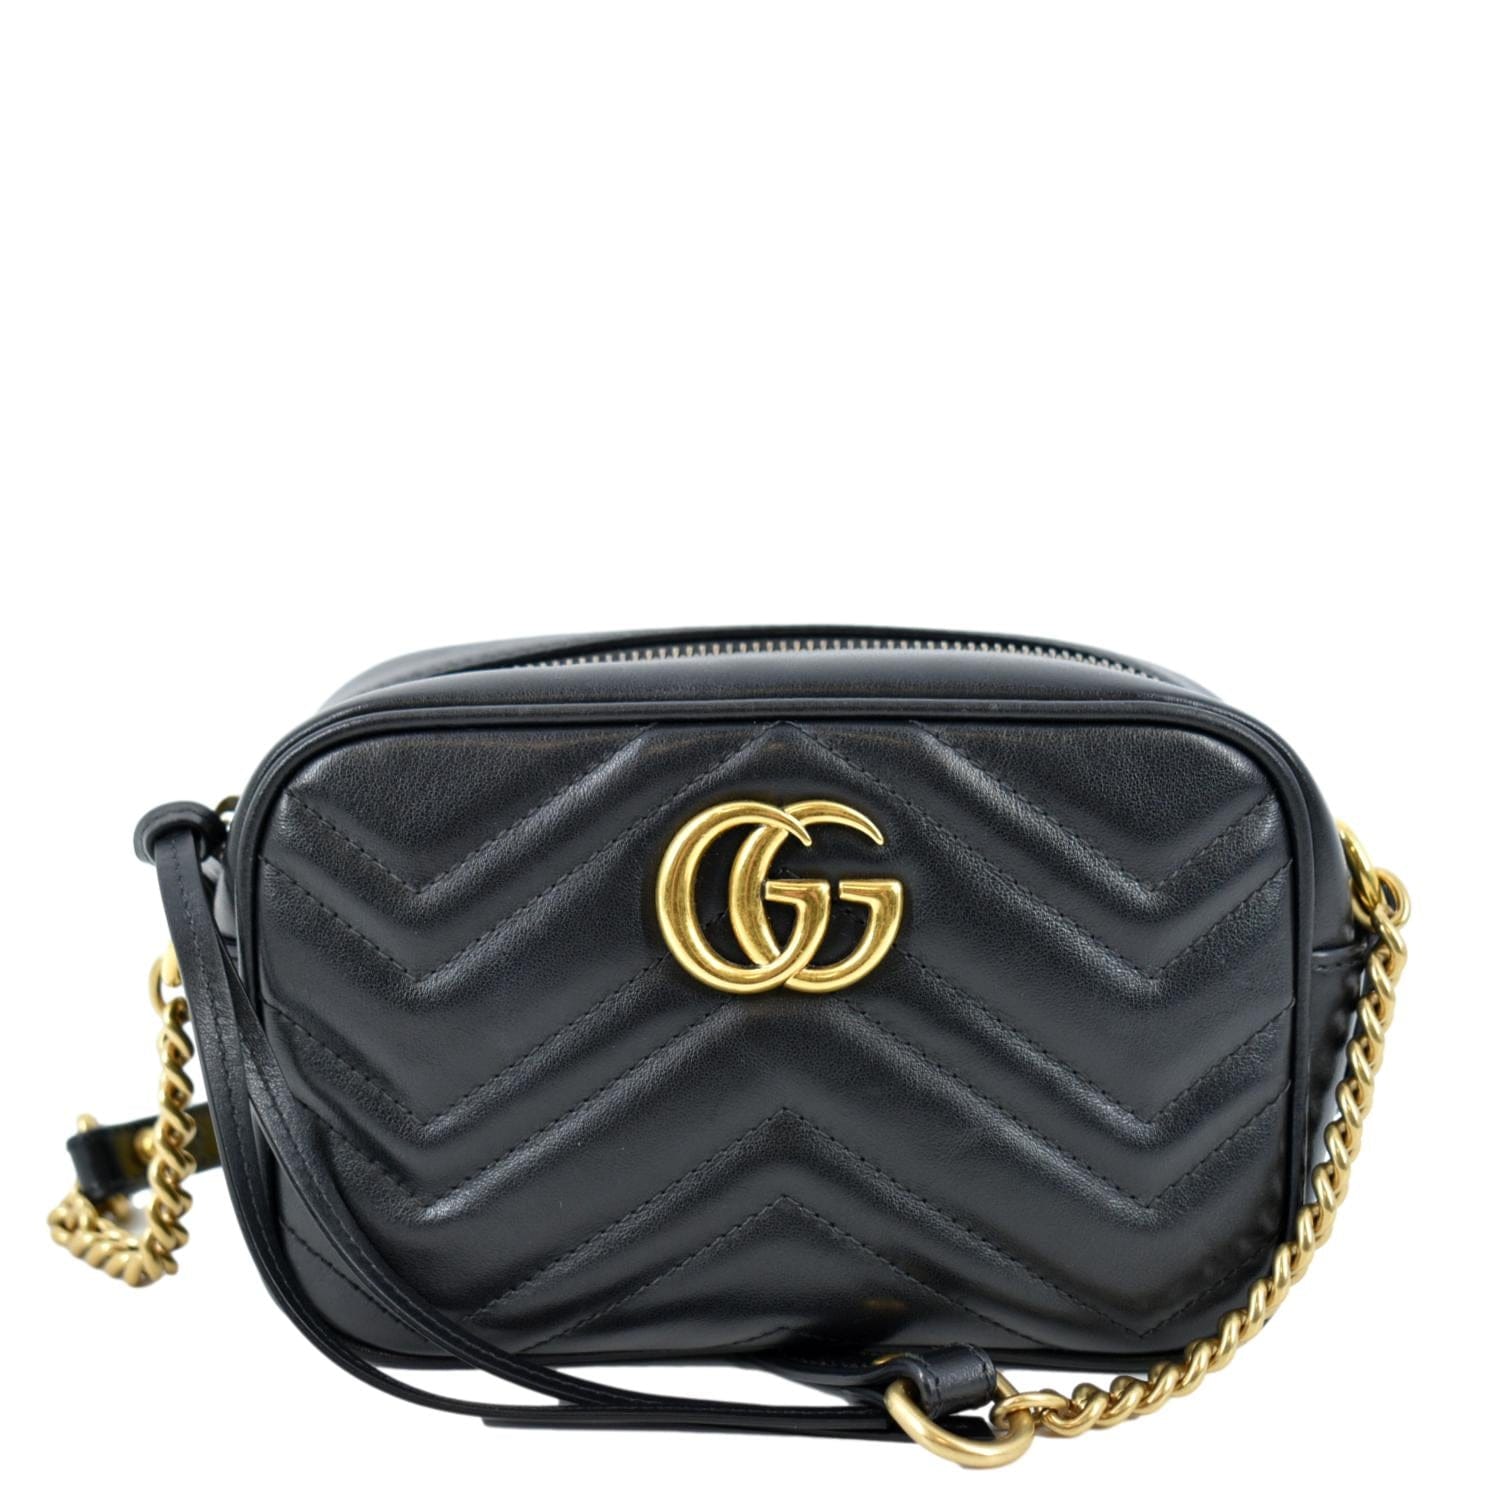 Treasures of NYC - Gucci Black Suede Monogram Shoulder Bag